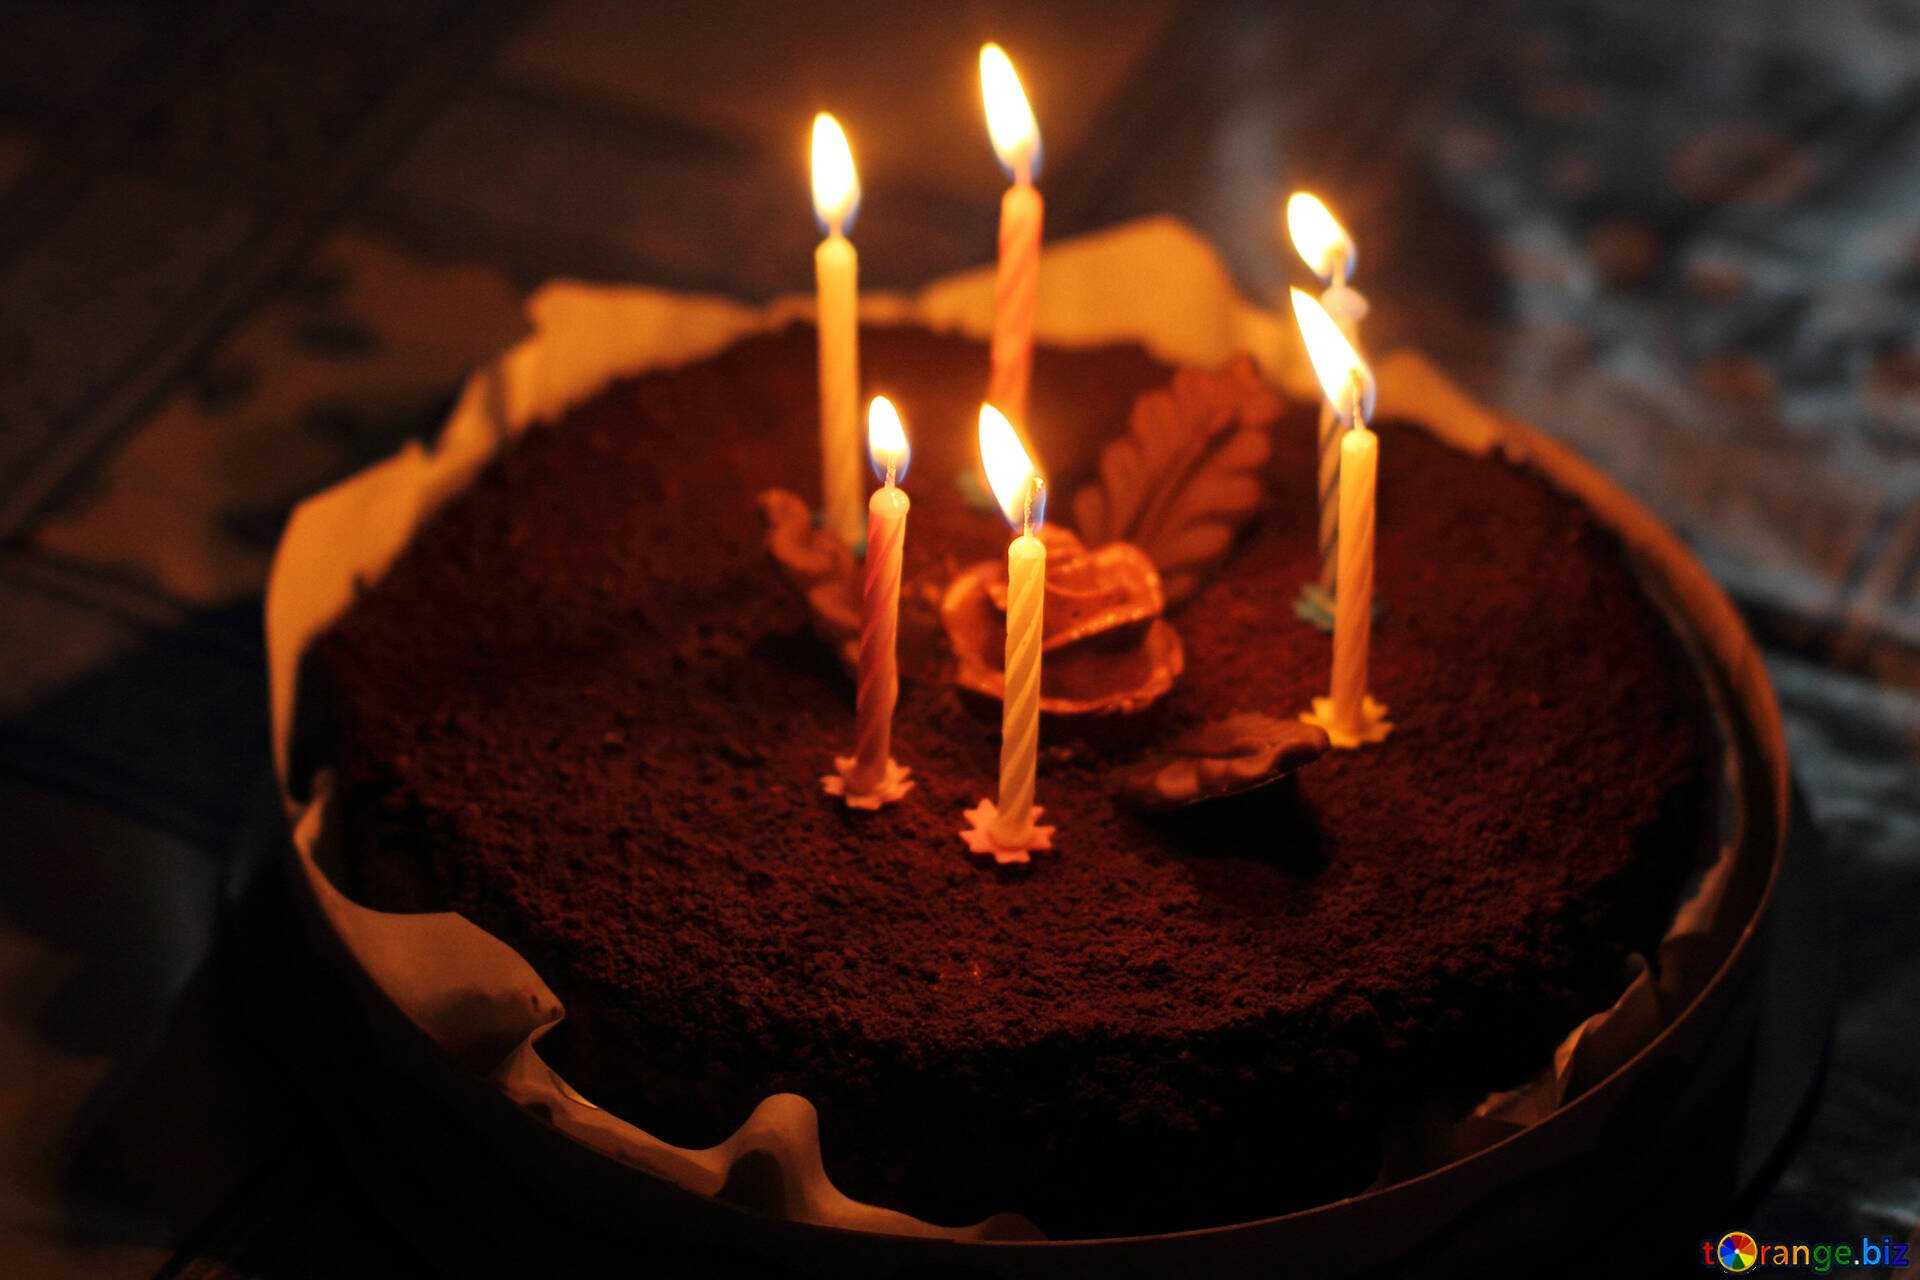 Видео торт свечи. Торт со свечками. Свечи для торта. Торт со свечами фото. Торт со свечами с днем рождения фото.